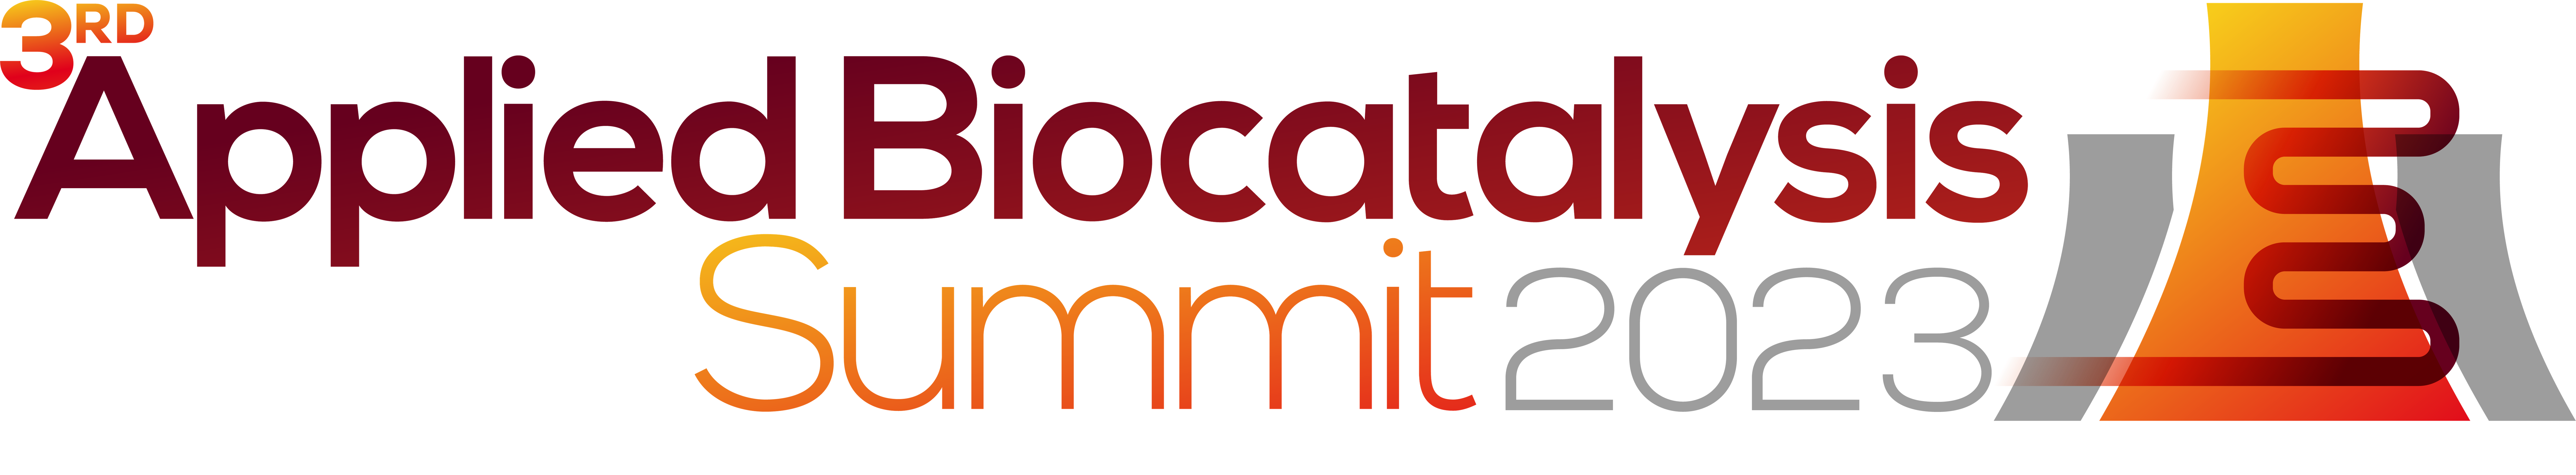 HW2300707 32342 - 3rd Applied Biocatalysis Summit 2023 logo